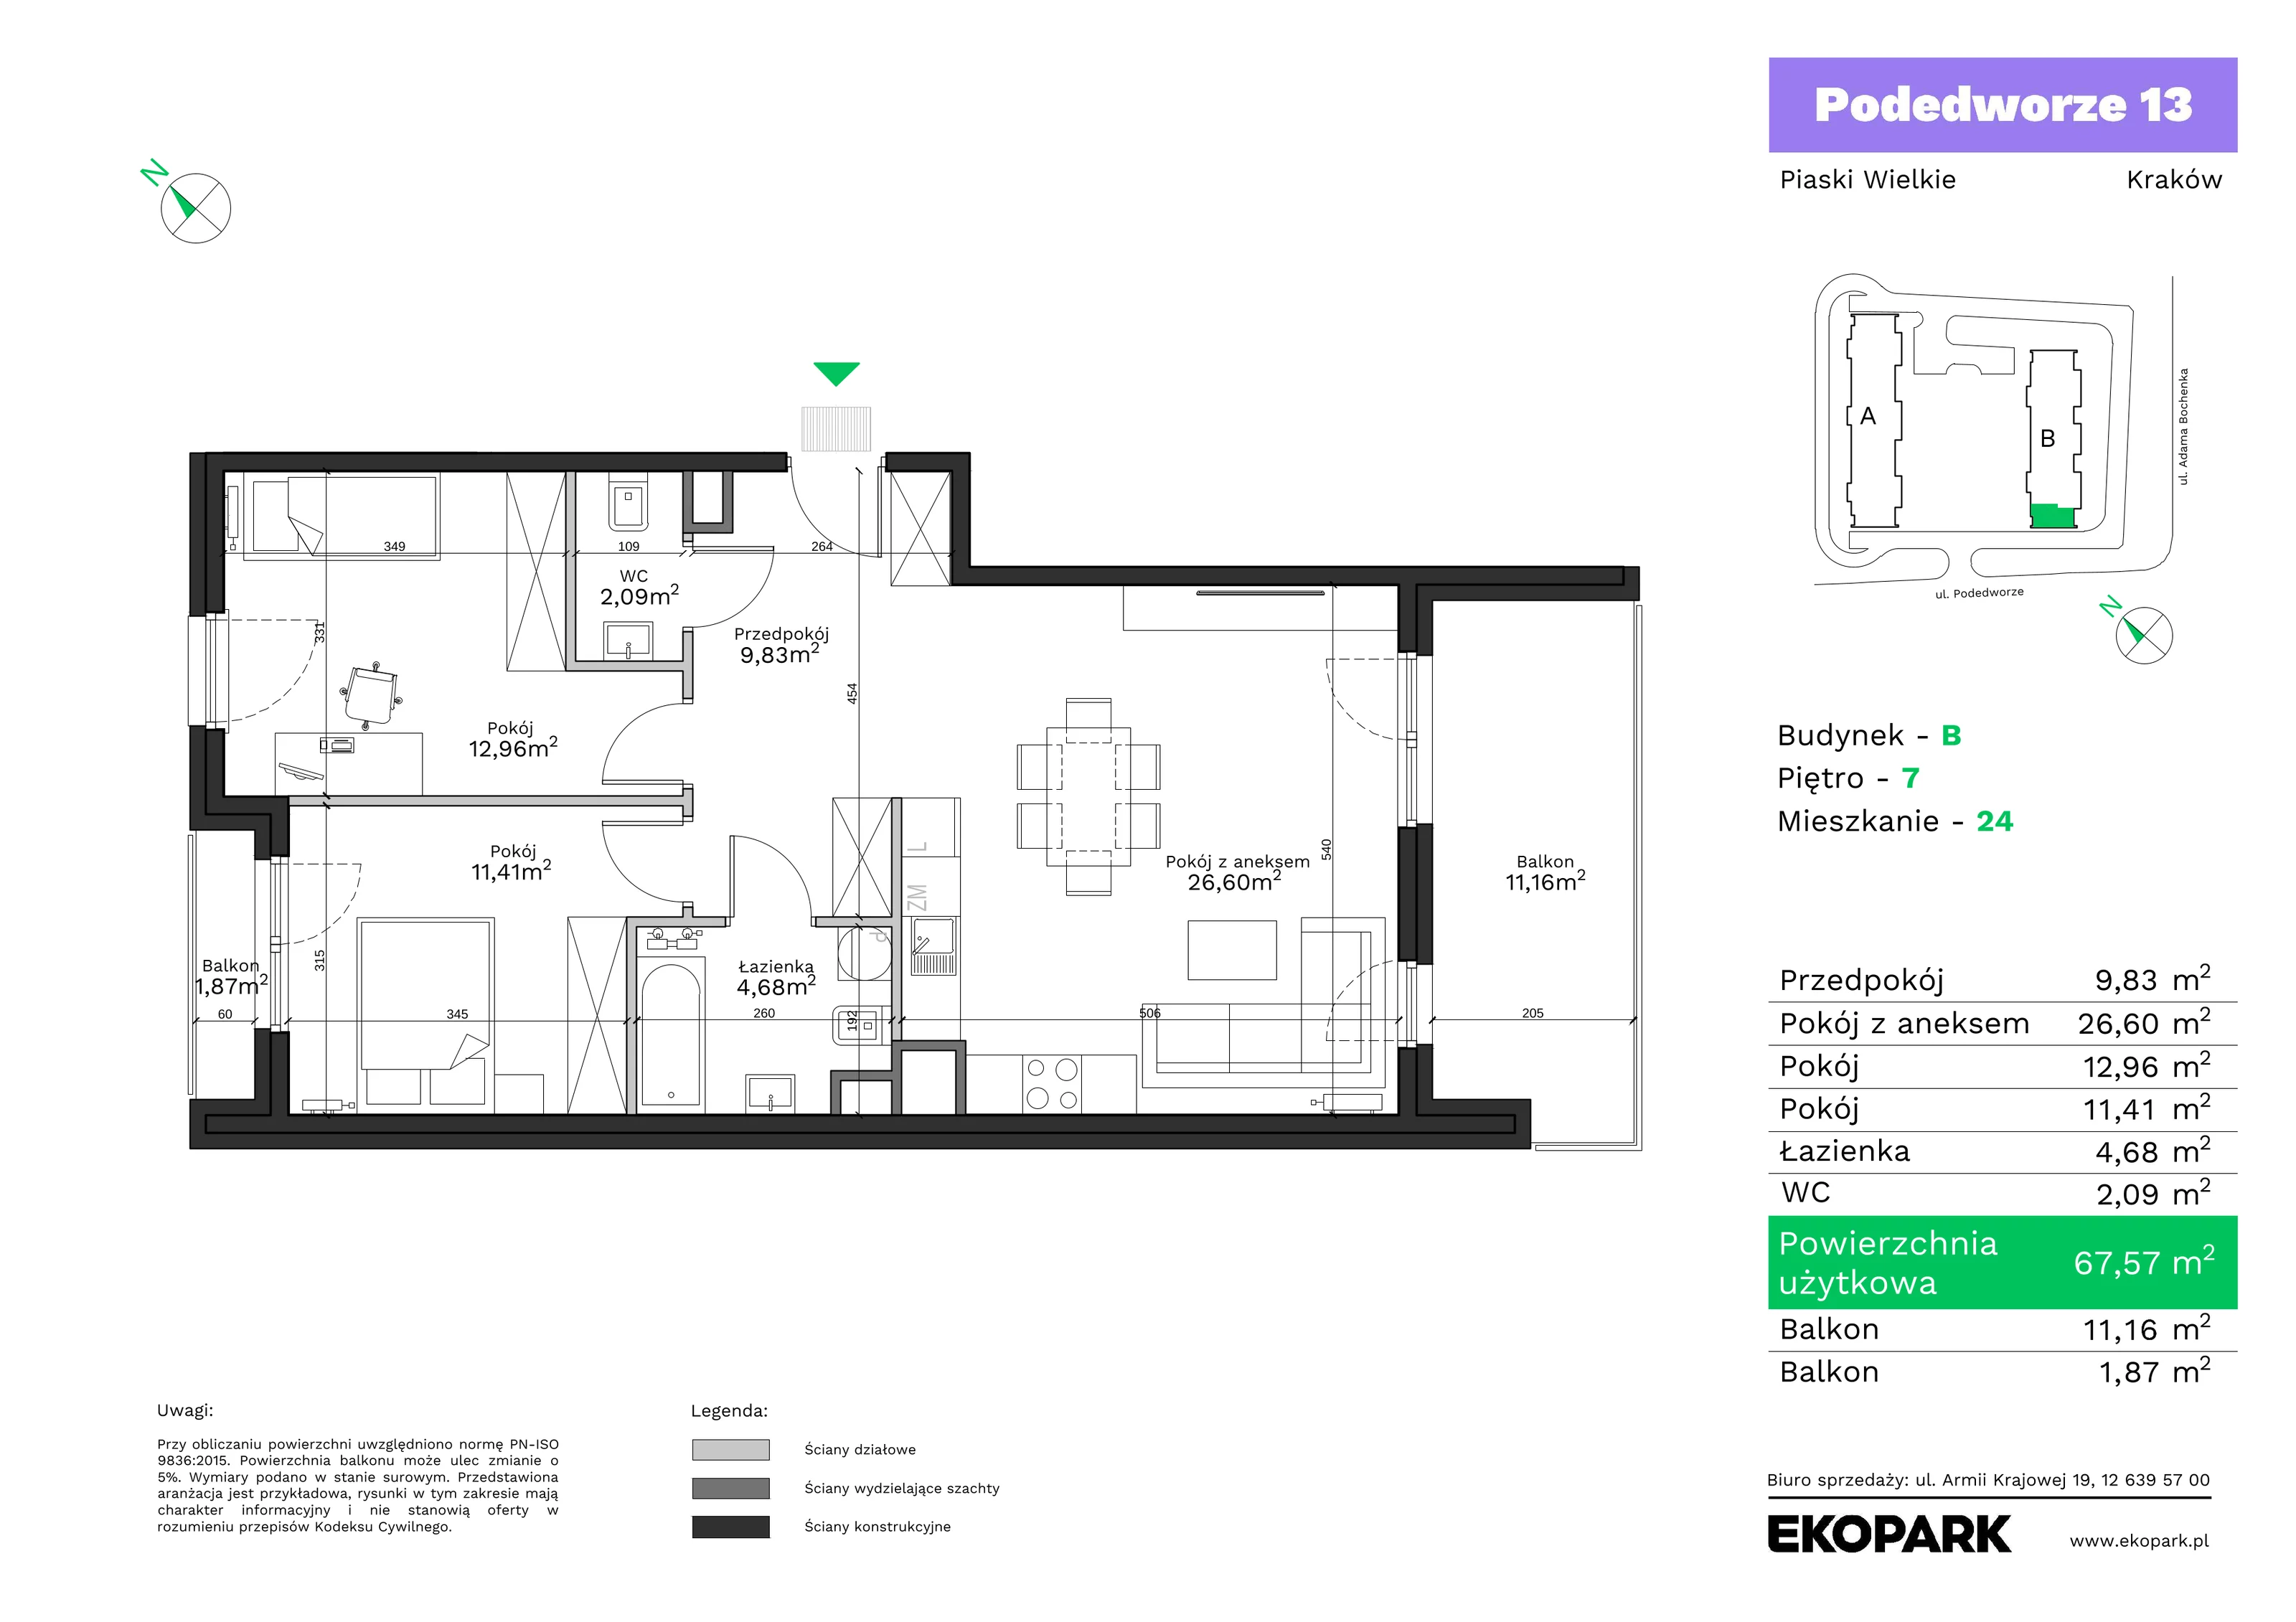 Mieszkanie 67,57 m², piętro 7, oferta nr B24, Podedworze 13, Kraków, Podgórze Duchackie, Piaski Wielkie, ul. Podedworze 13